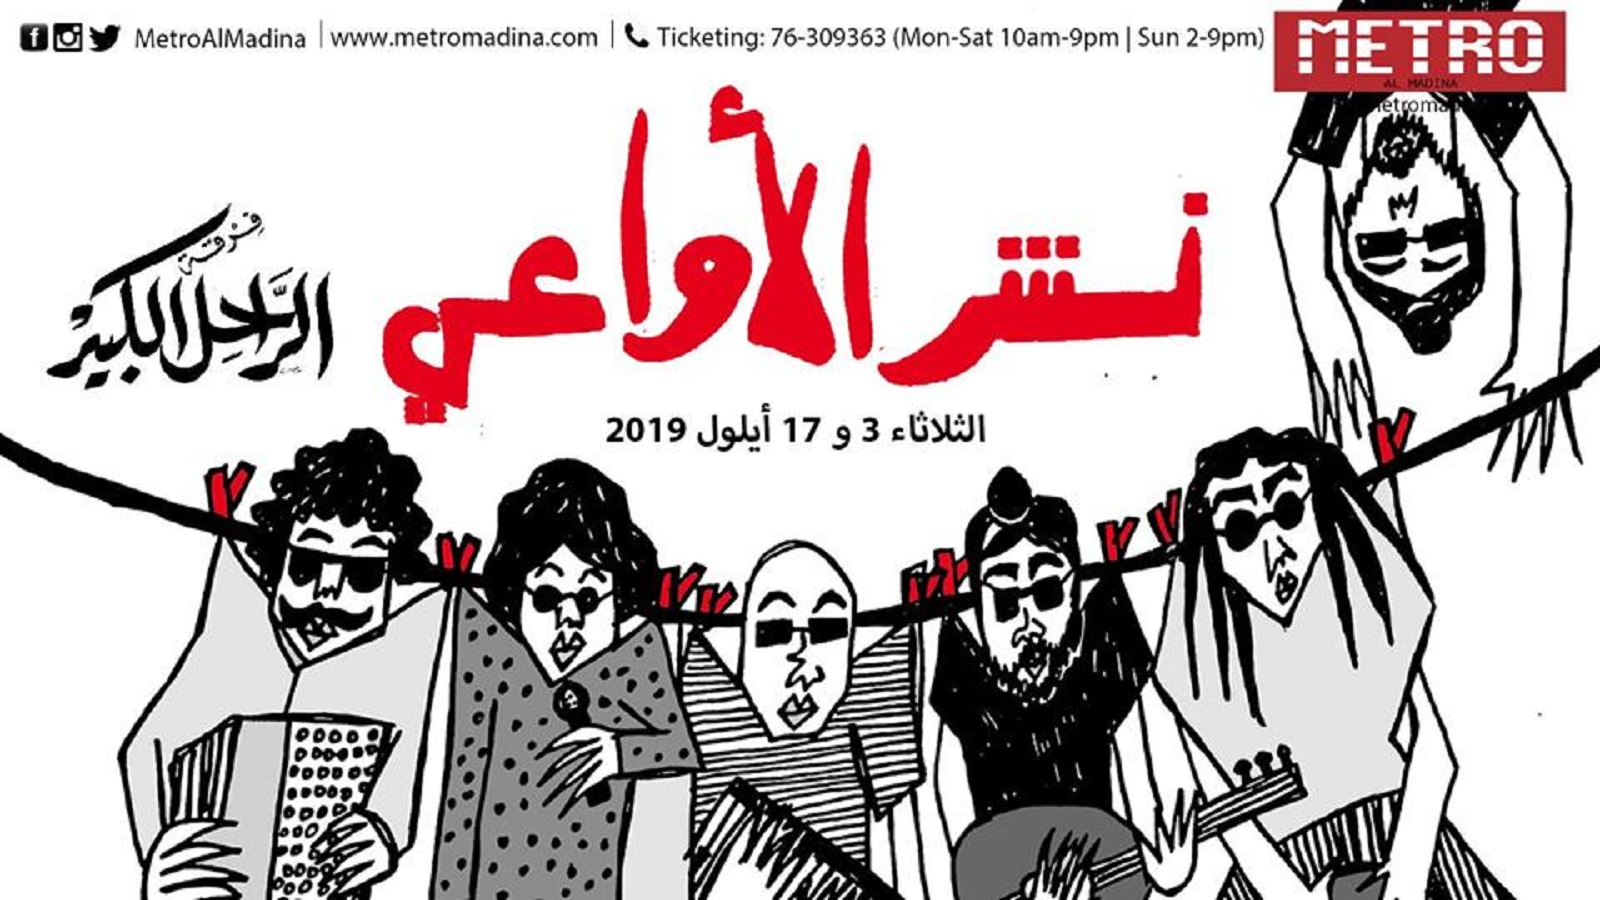 "نشر الأواعي" في "مترو المدينة" احتفالاً "بالتقدّم اللبناني"